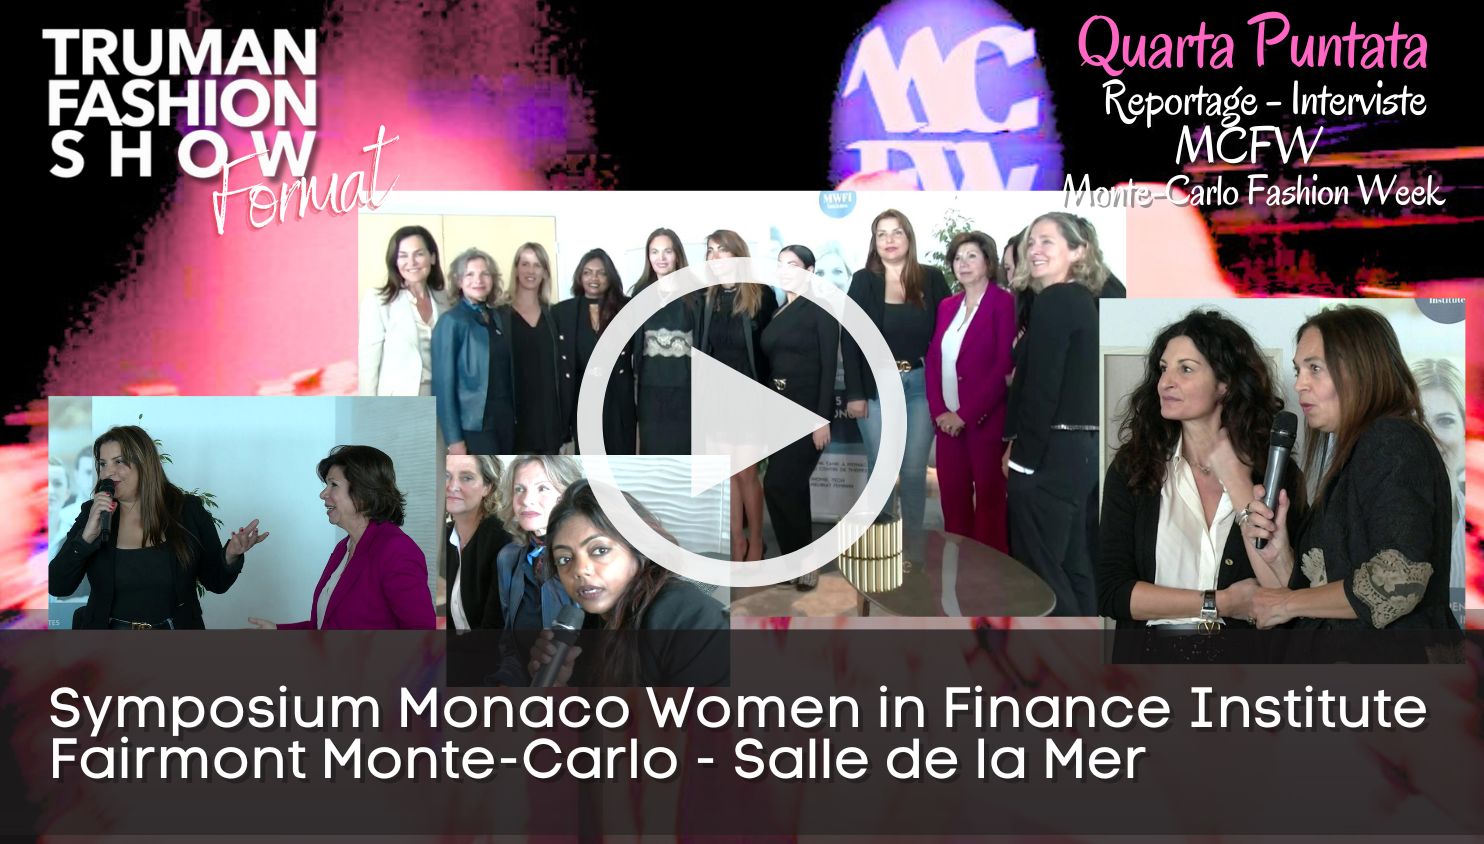 Quarta Puntata del Reportage della Montecarlo Fashion Week MCFW organizzata dalla Camera della Moda di Monaco, Presidentessa Federica Nardoni Spinetta.